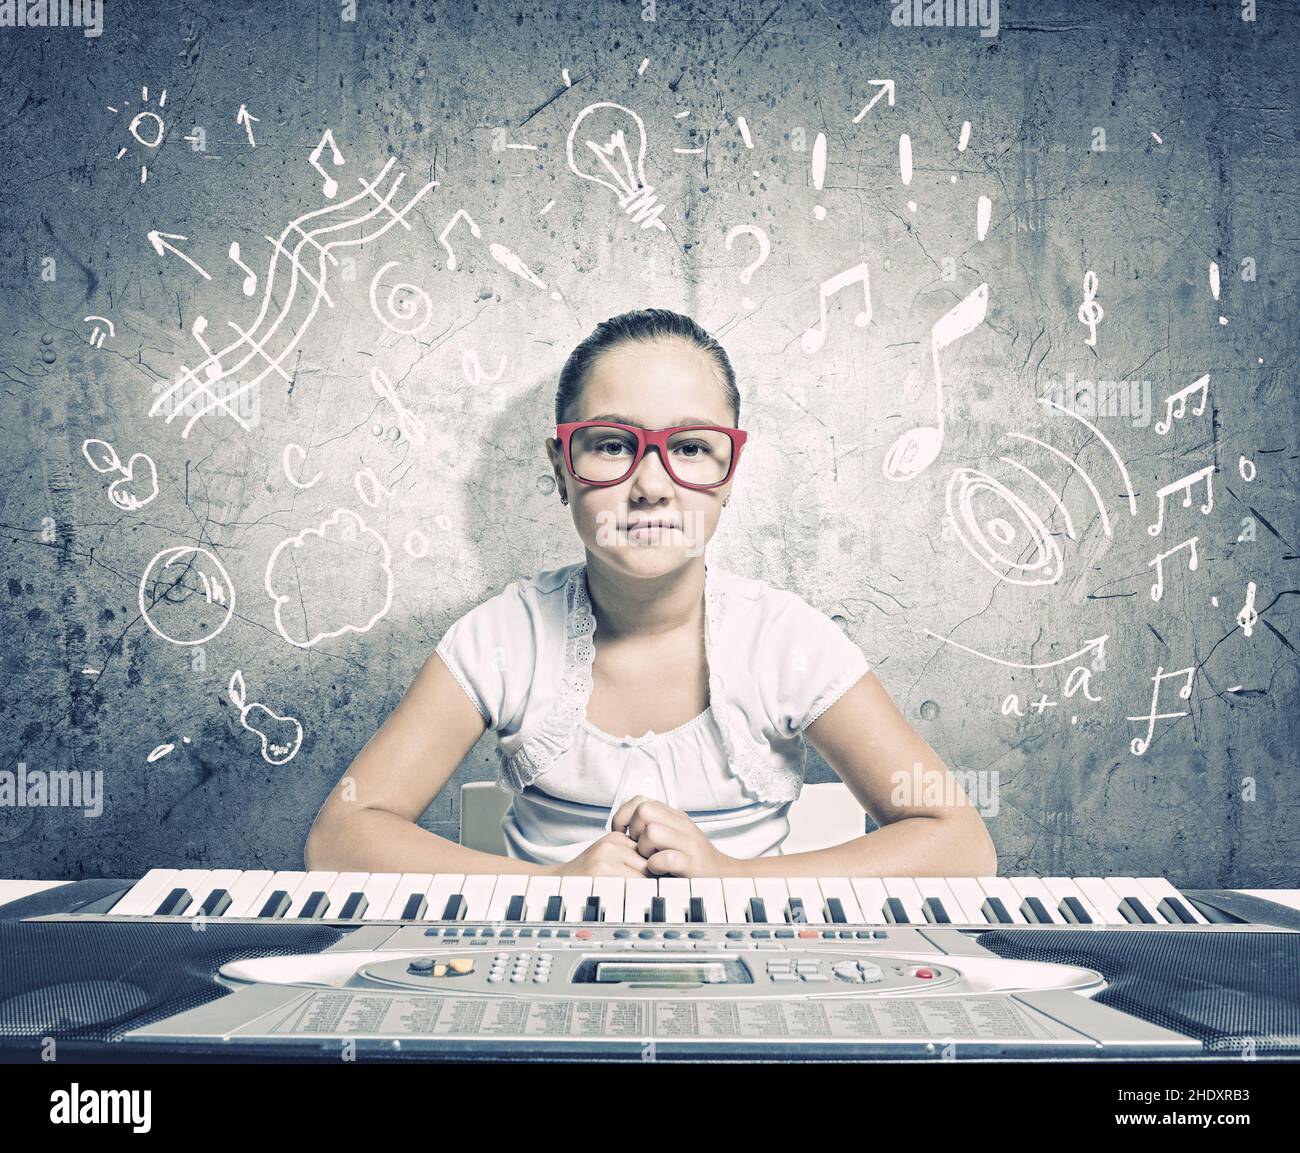 playing music, child prodigy, compose, playing musics, child prodigies, composes Stock Photo